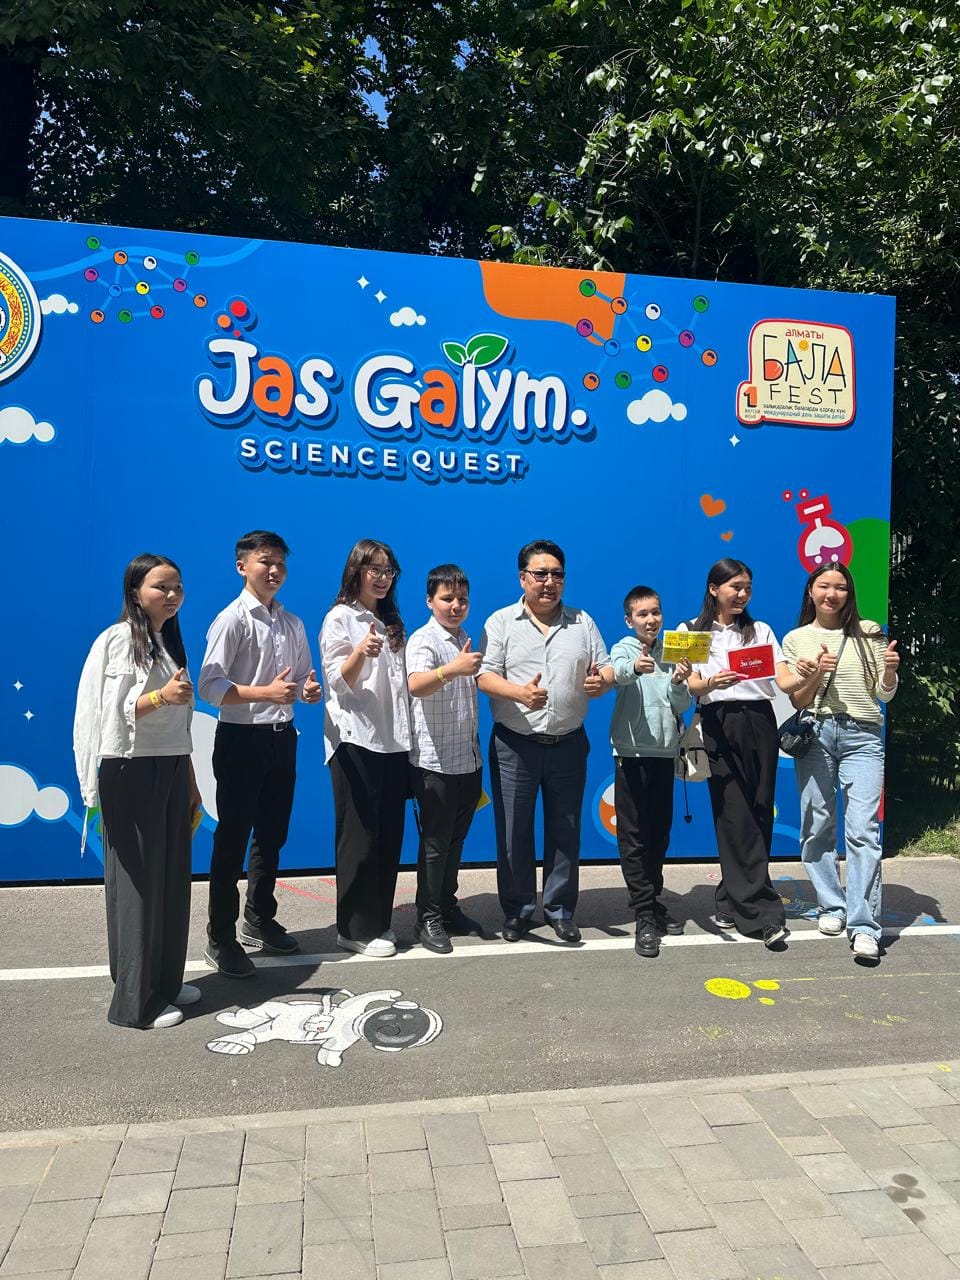 Халықаралық балаларды қорғау күніне орай Алматыда ғылым тақырыбына арналған «Jas Galym. Science Quest» фестивалі өтті